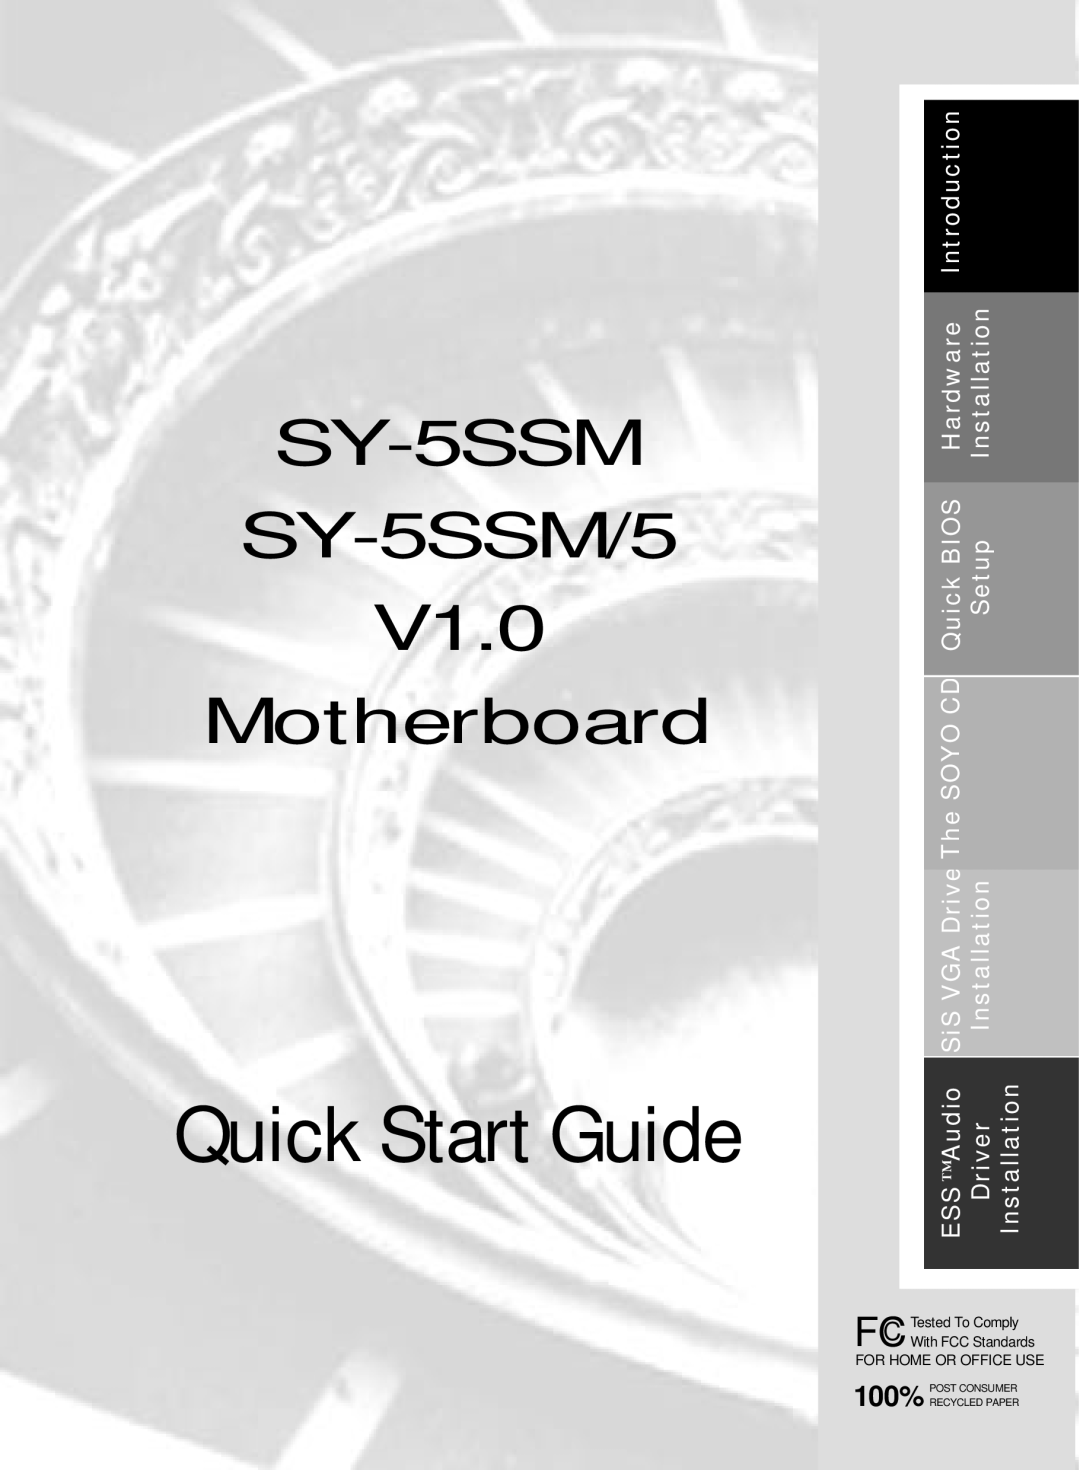 SOYO quick start Quick Start Guide, SY-5SSM SY-5SSM/5 V1.0 Motherboard 